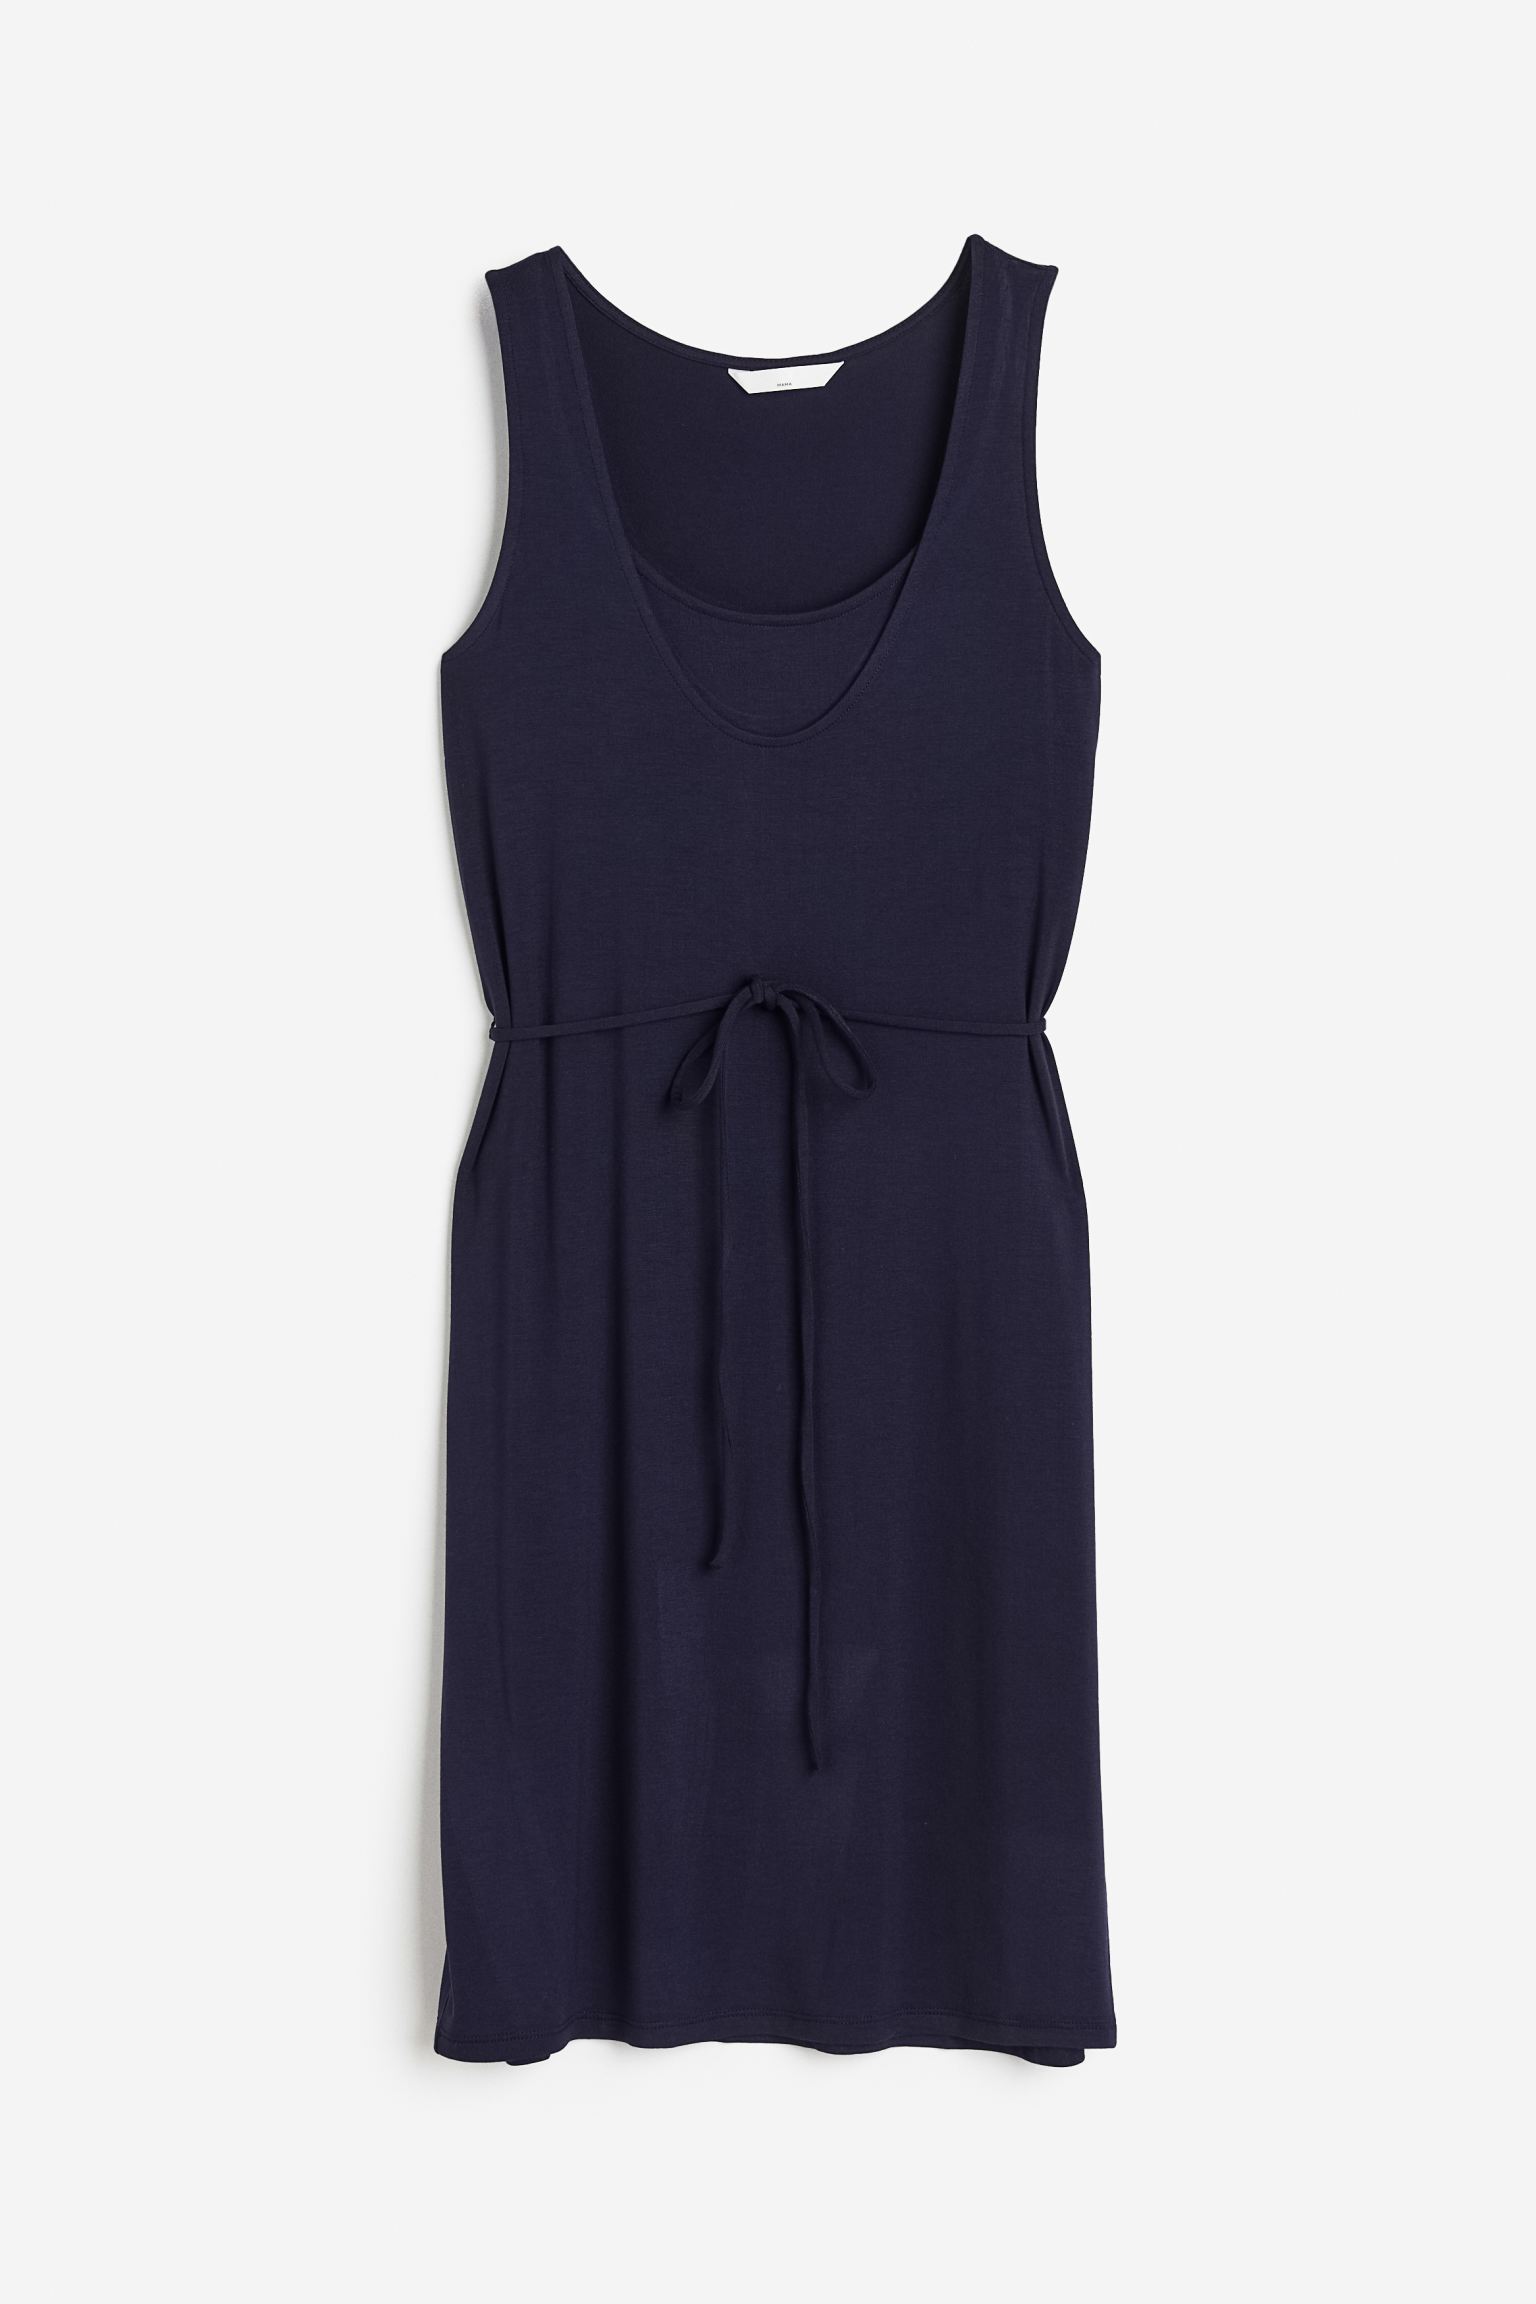 Платье женское H&M 1116459002 синее M (доставка из-за рубежа)